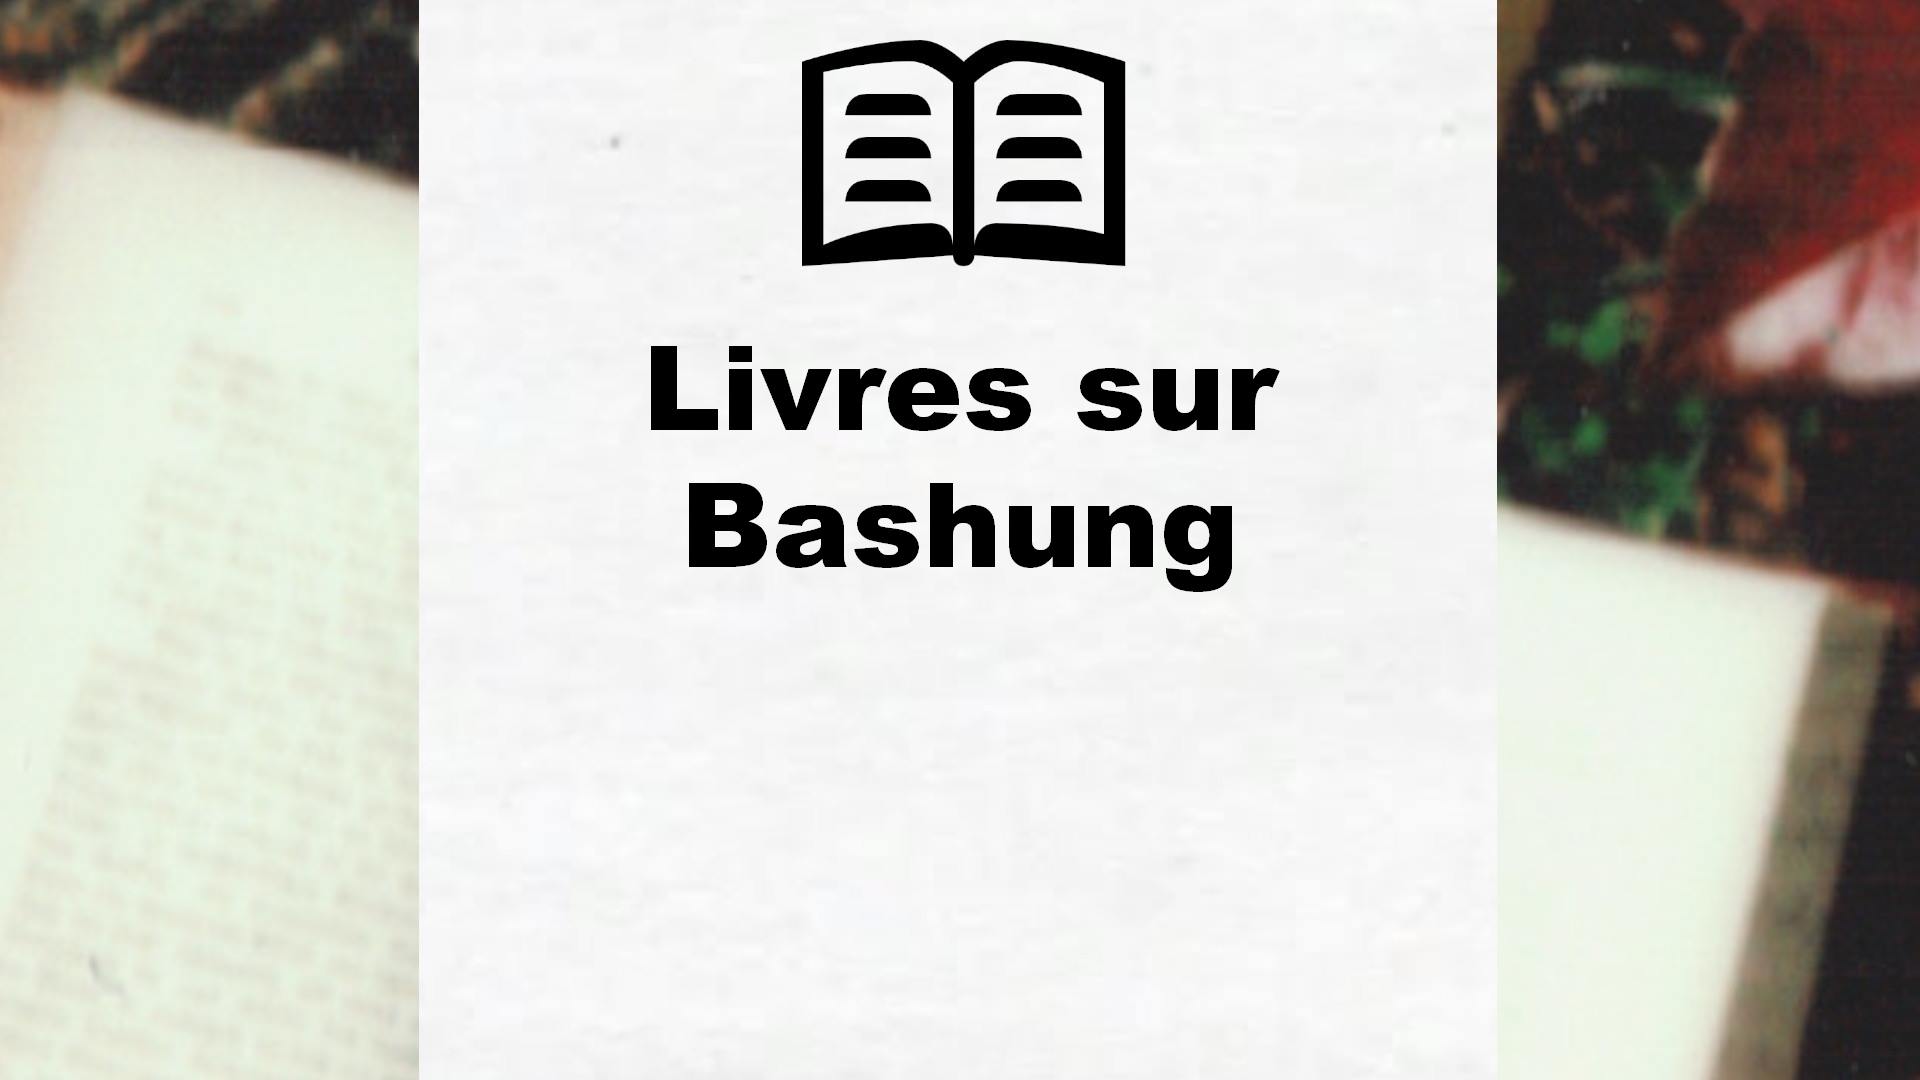 Livres sur Bashung